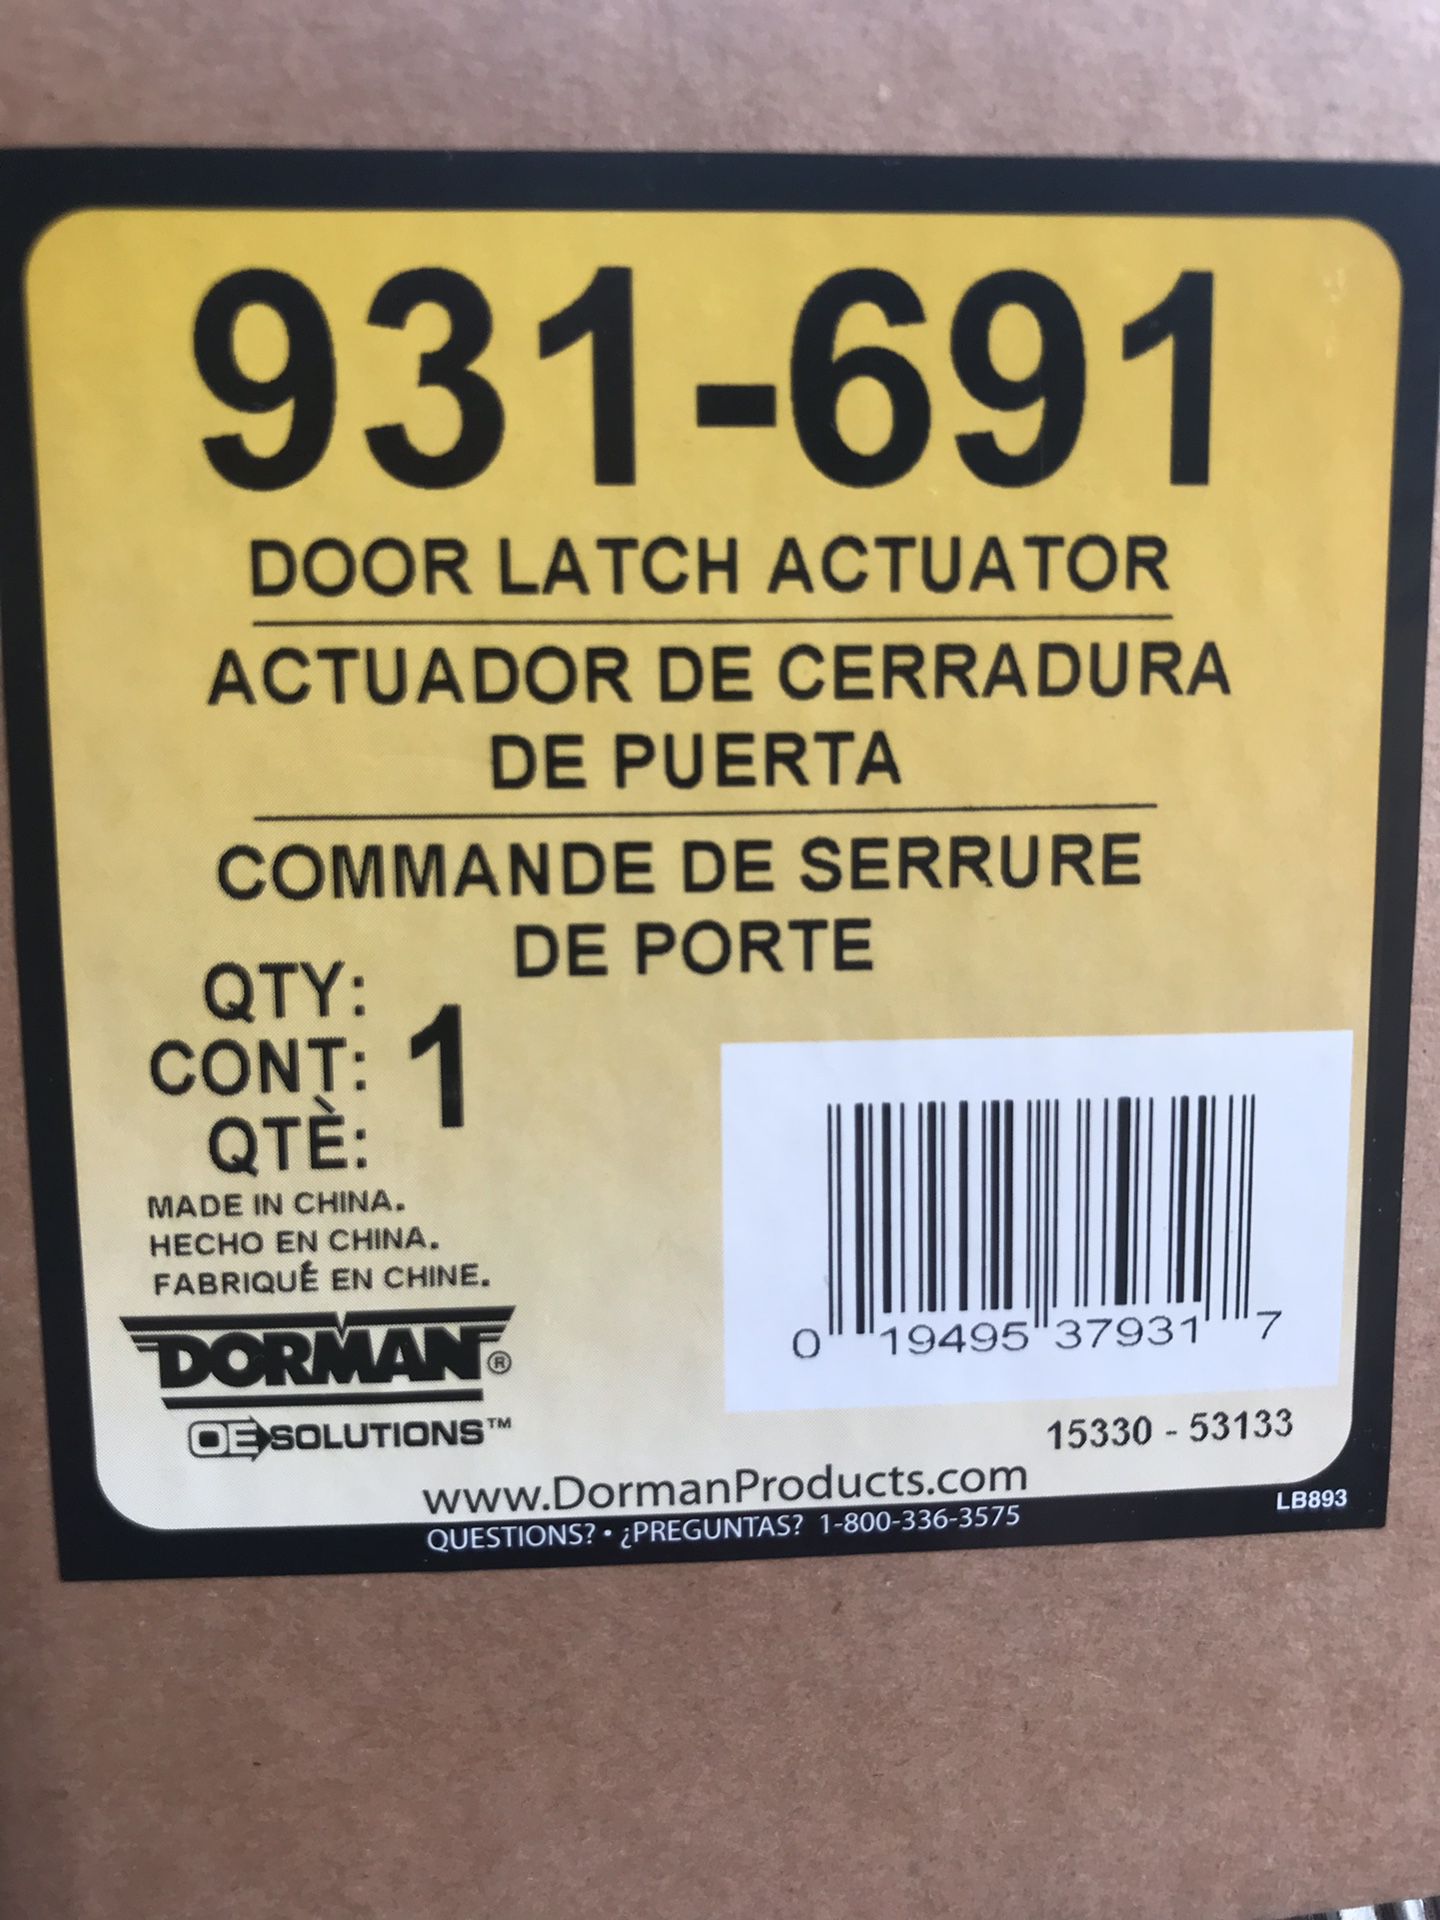 Dorman 931-691 Door Latch Actuator